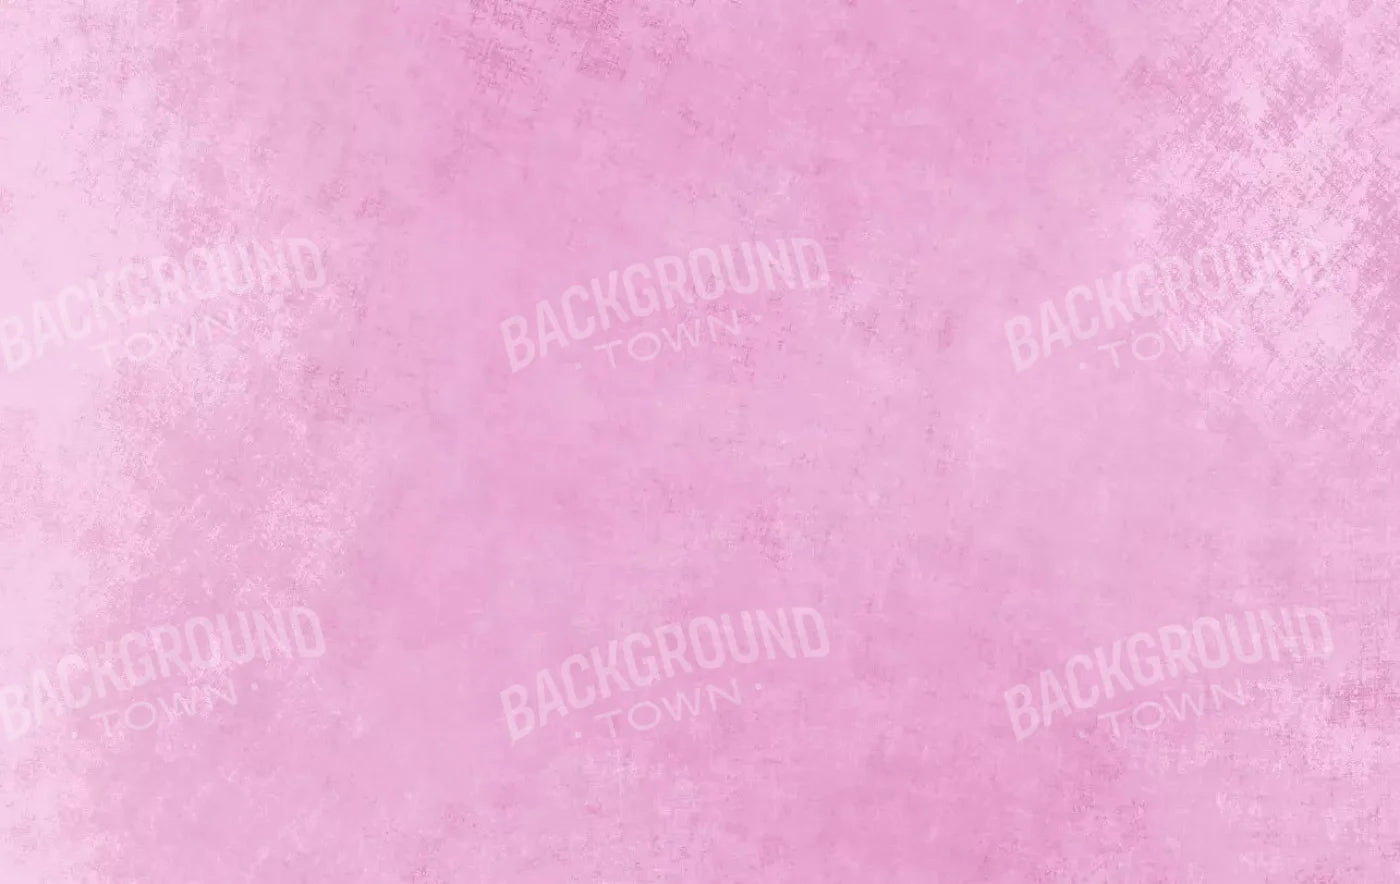 Aged Bubblegum 16X10 Ultracloth ( 192 X 120 Inch ) Backdrop